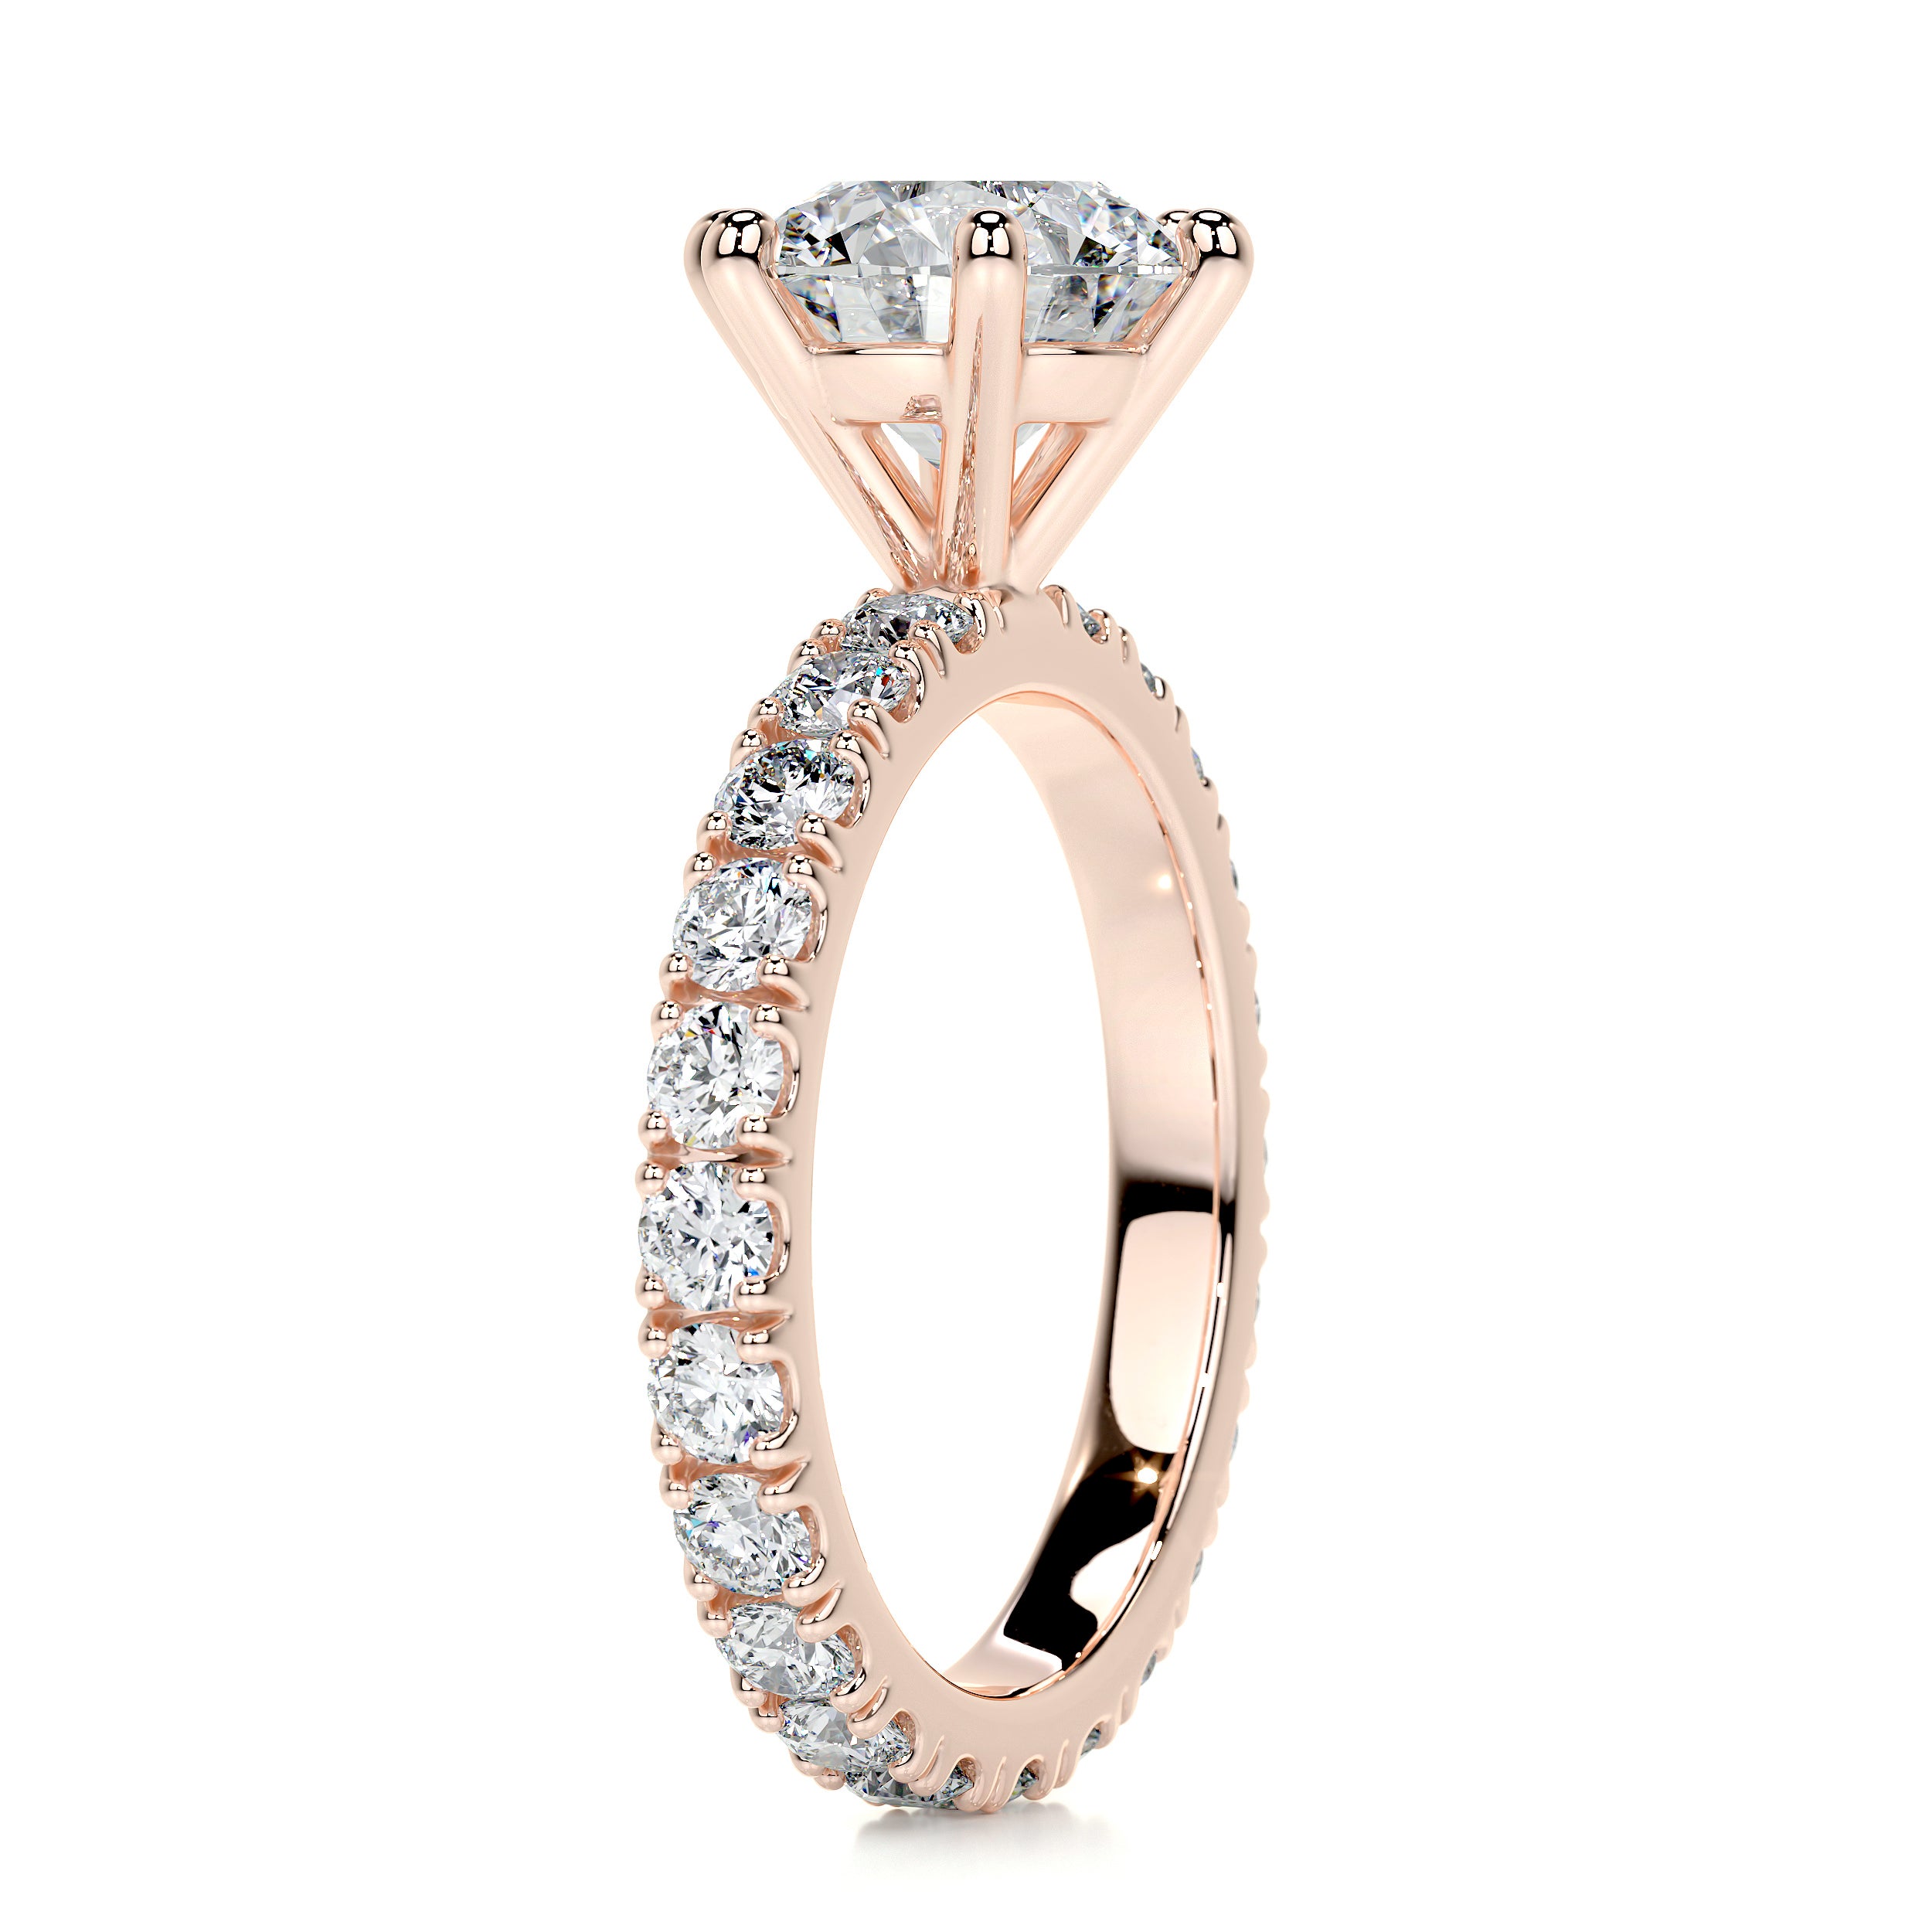 Jane Diamond Engagement Ring   (2.25 Carat) -14K Rose Gold